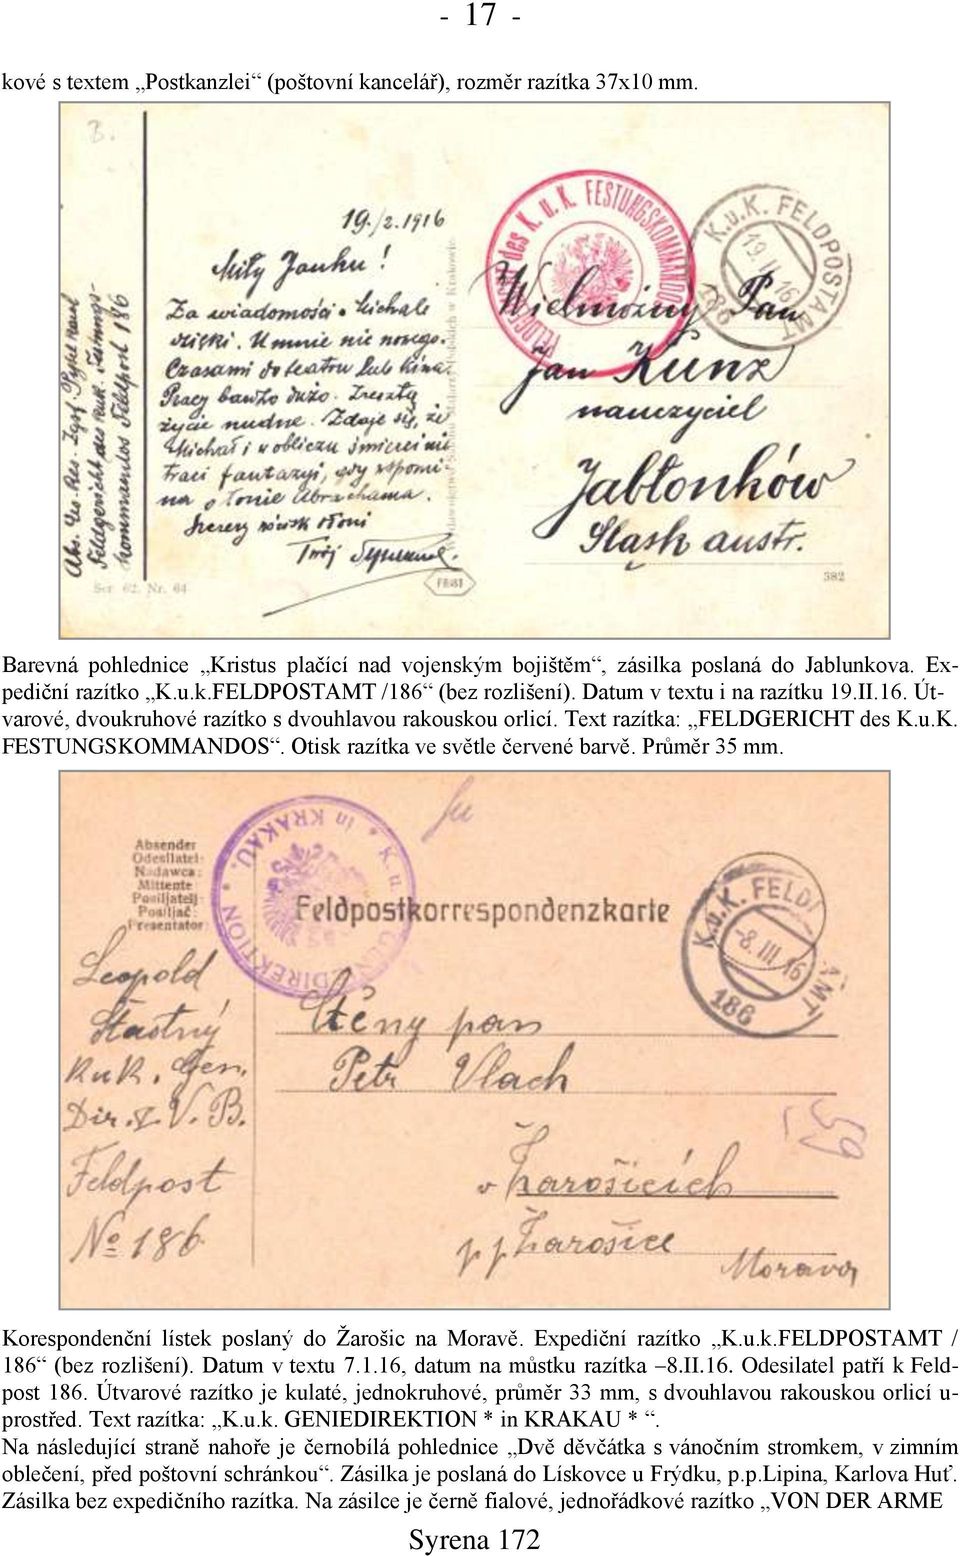 Průměr 35 mm. Korespondenční lístek poslaný do Ņarońic na Moravě. Expediční razítko K.u.k.FELDPOSTAMT / 186 (bez rozlińení). Datum v textu 7.1.16, datum na můstku razítka 8.II.16. Odesilatel patří k Feldpost 186.